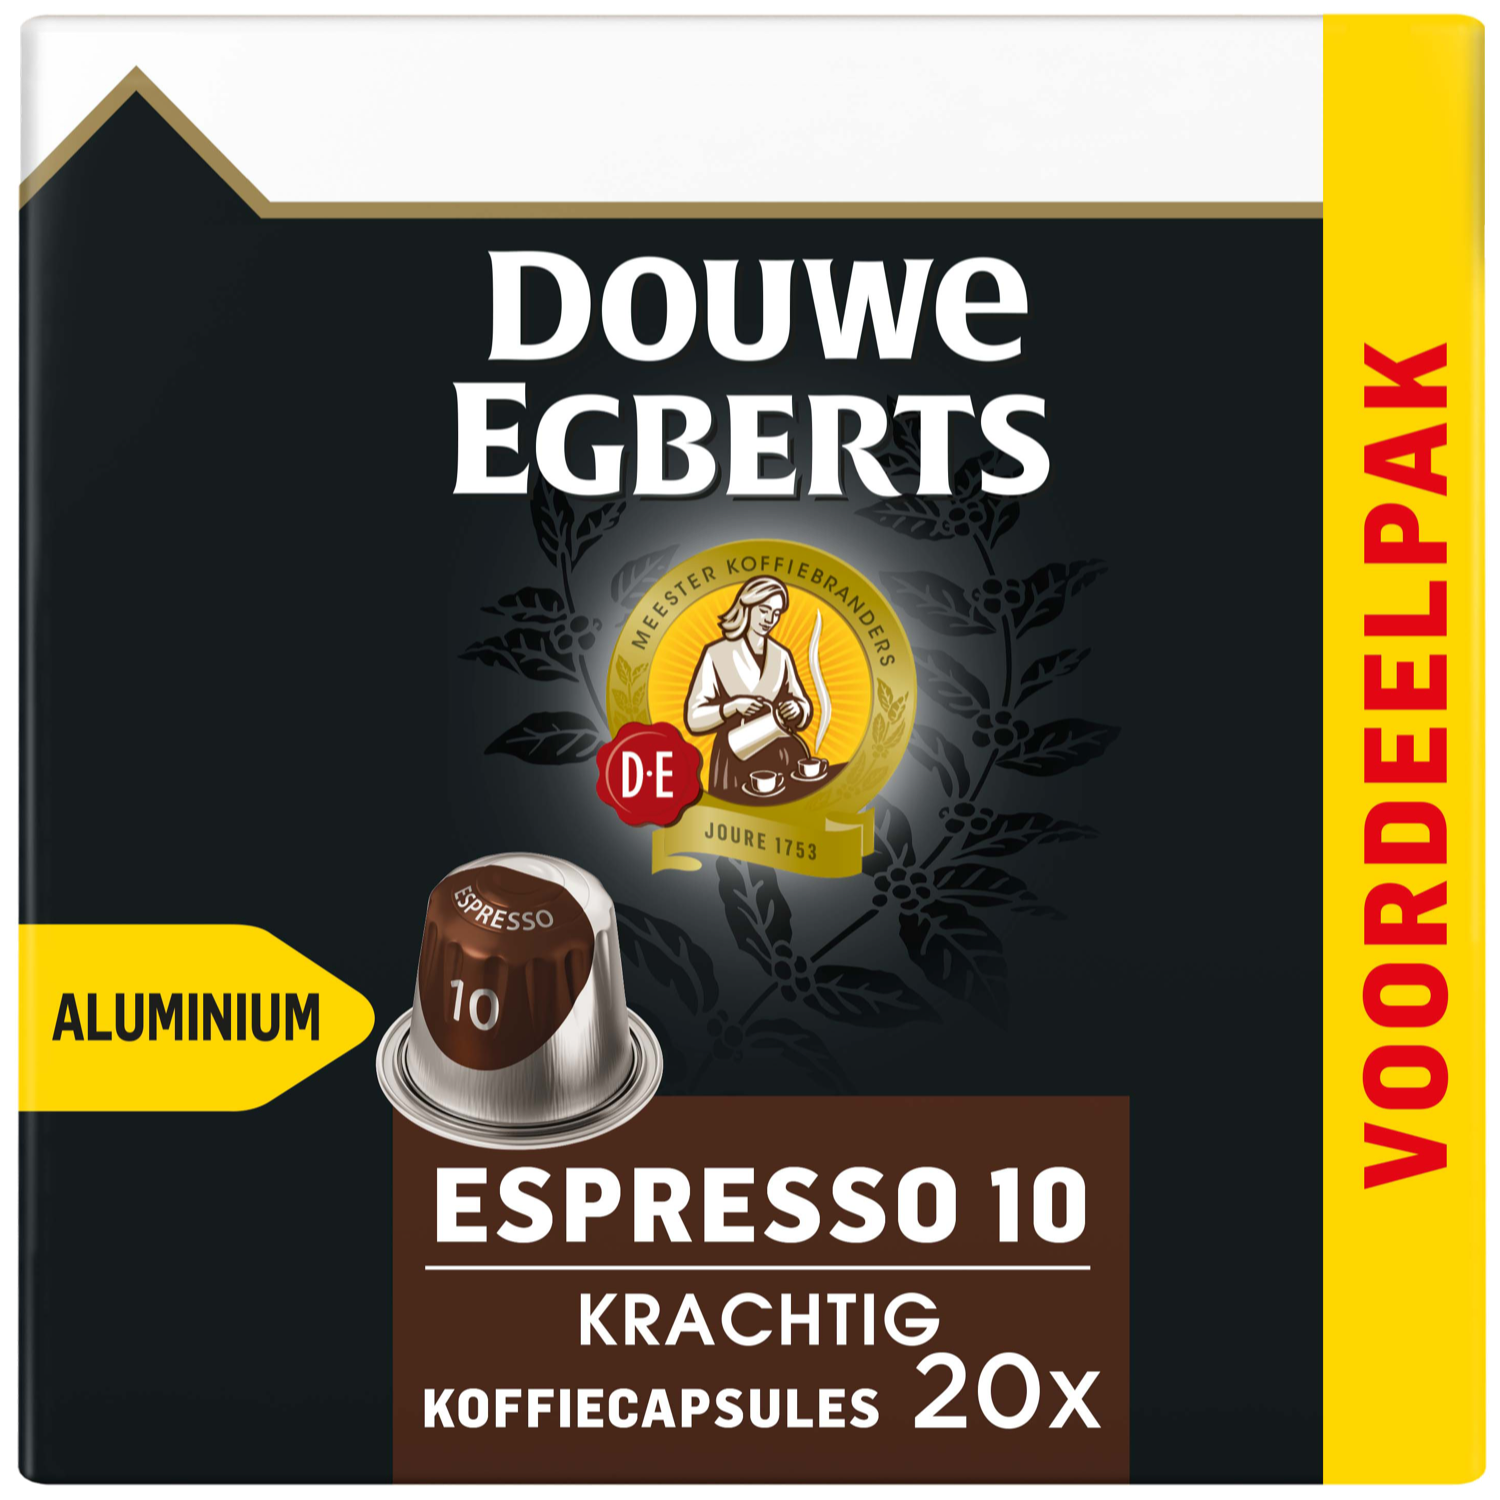 Douwe Egberts Espresso Krachtig koffiecups bestellen?